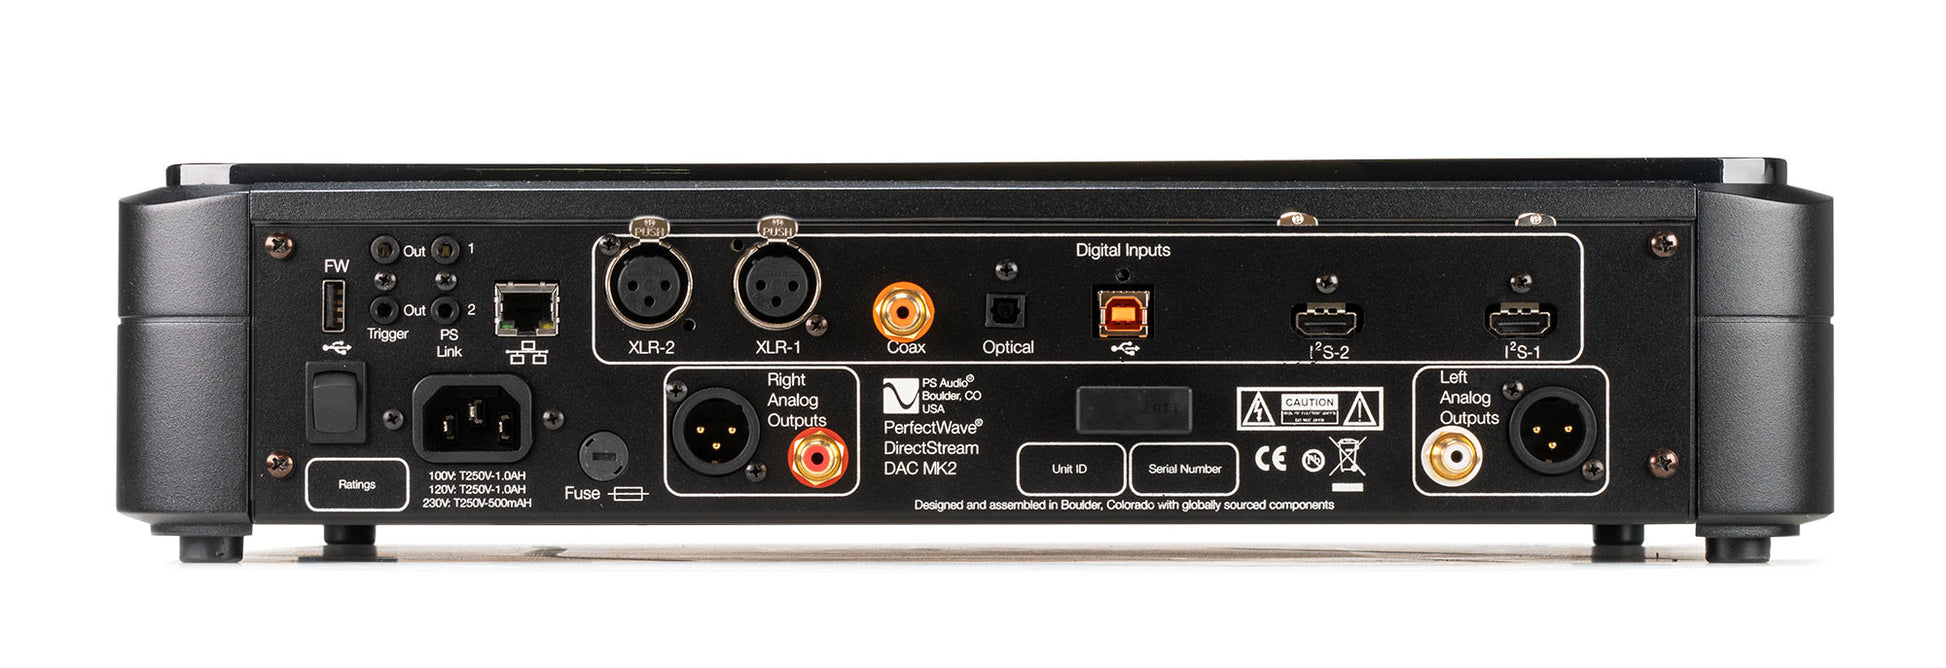 Retirado política ligado DirectStream DAC MK2 – PS Audio